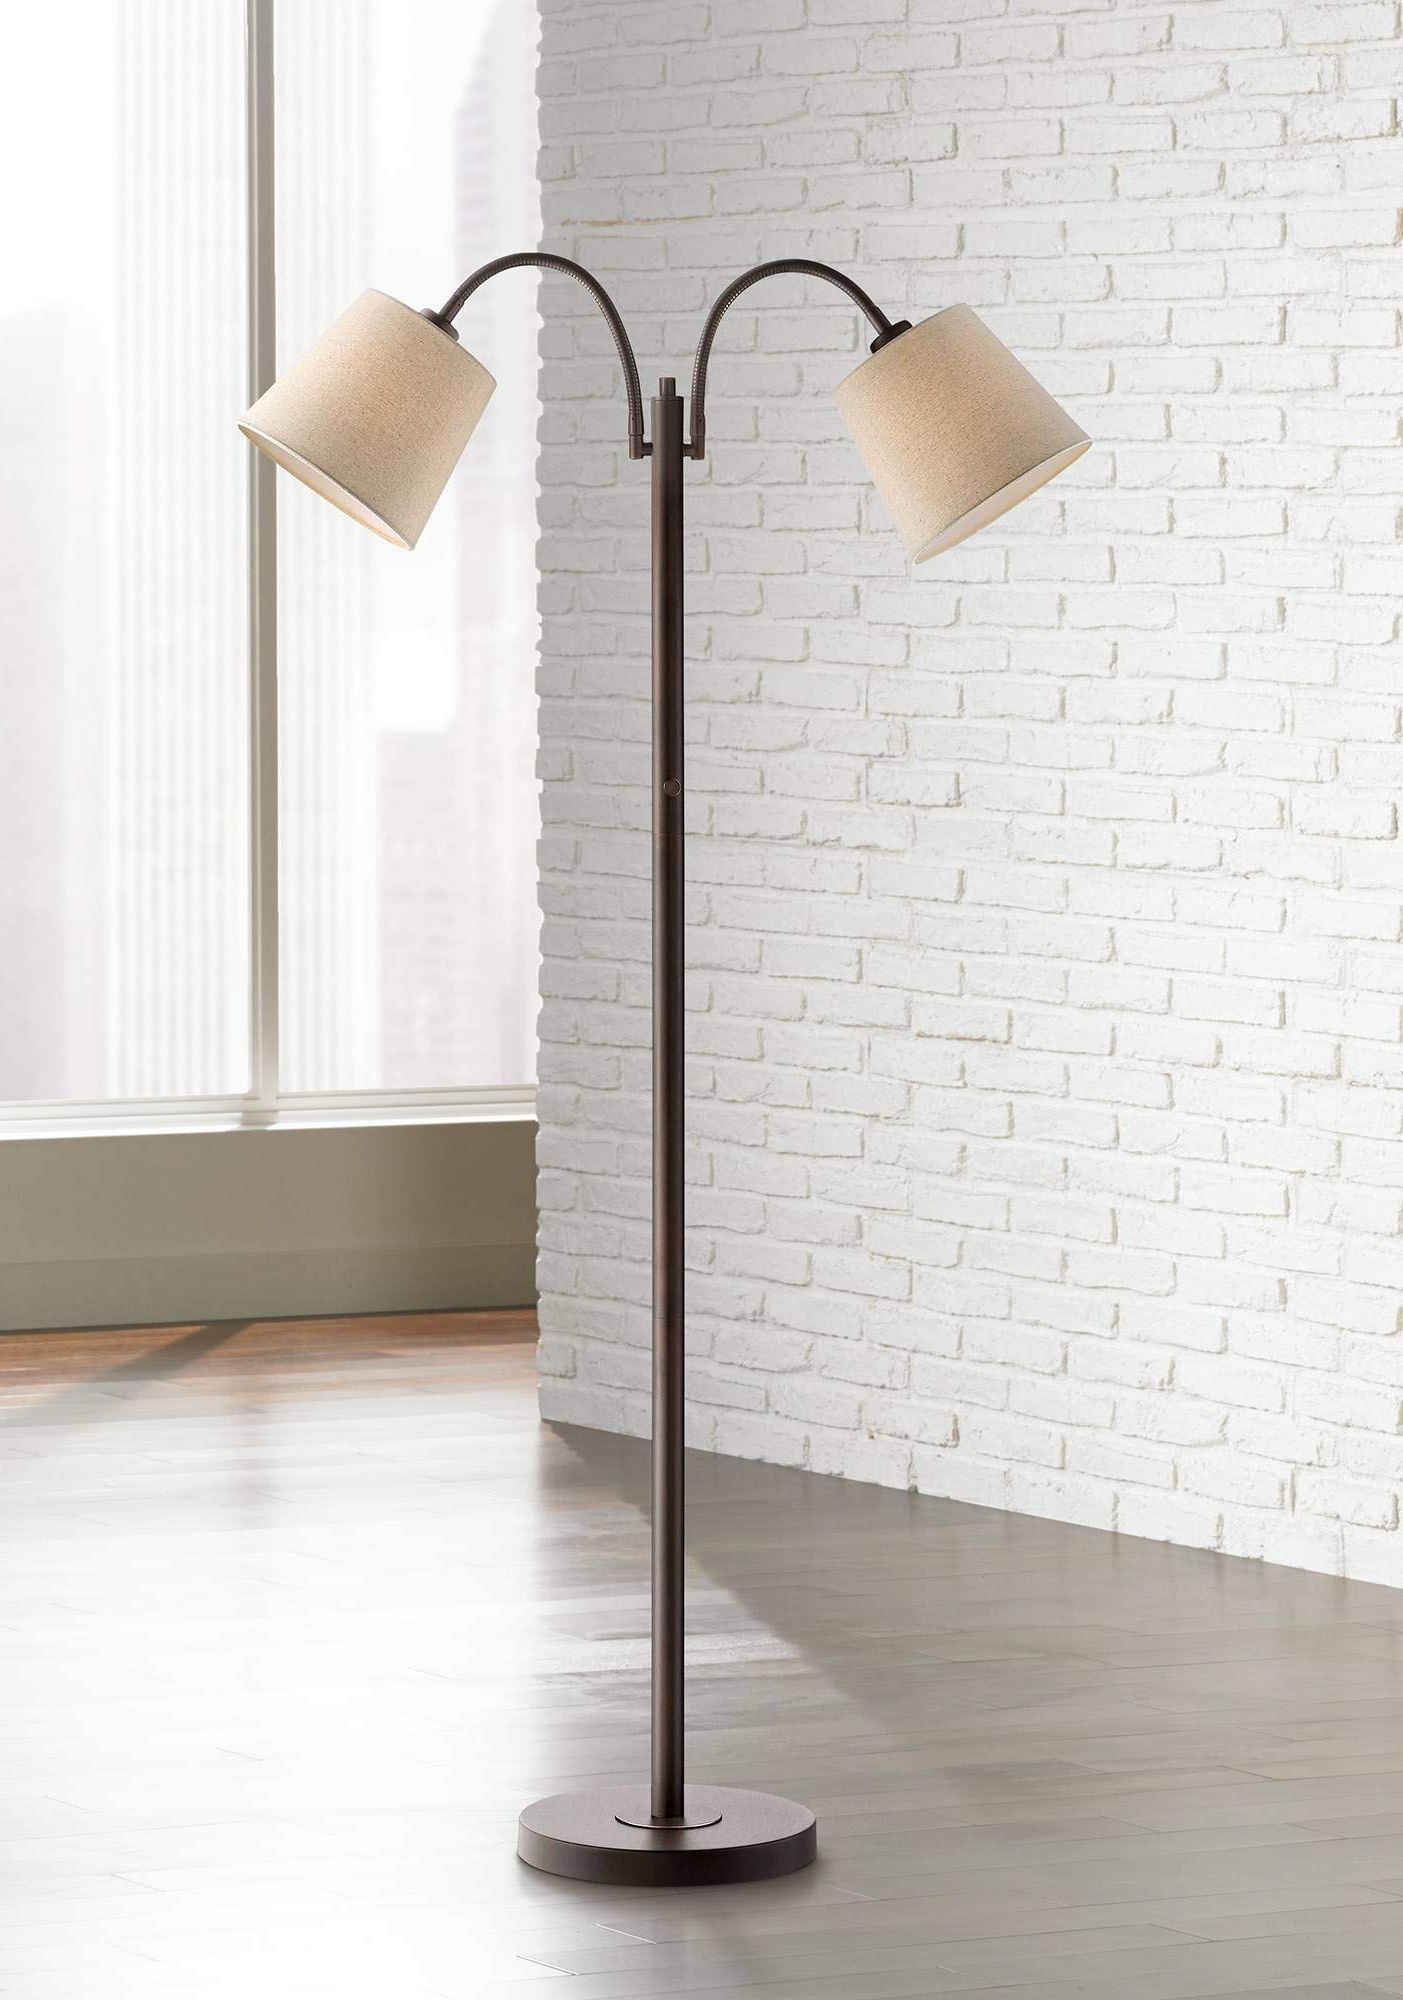 360 Lighting Seneca Modern Standing Floor Lamp 56" Tall Dark Bronze Brown  Twin Arm Adjustable Gooseneck Regarding 2019 2 Arm Standing Lamps (View 6 of 10)